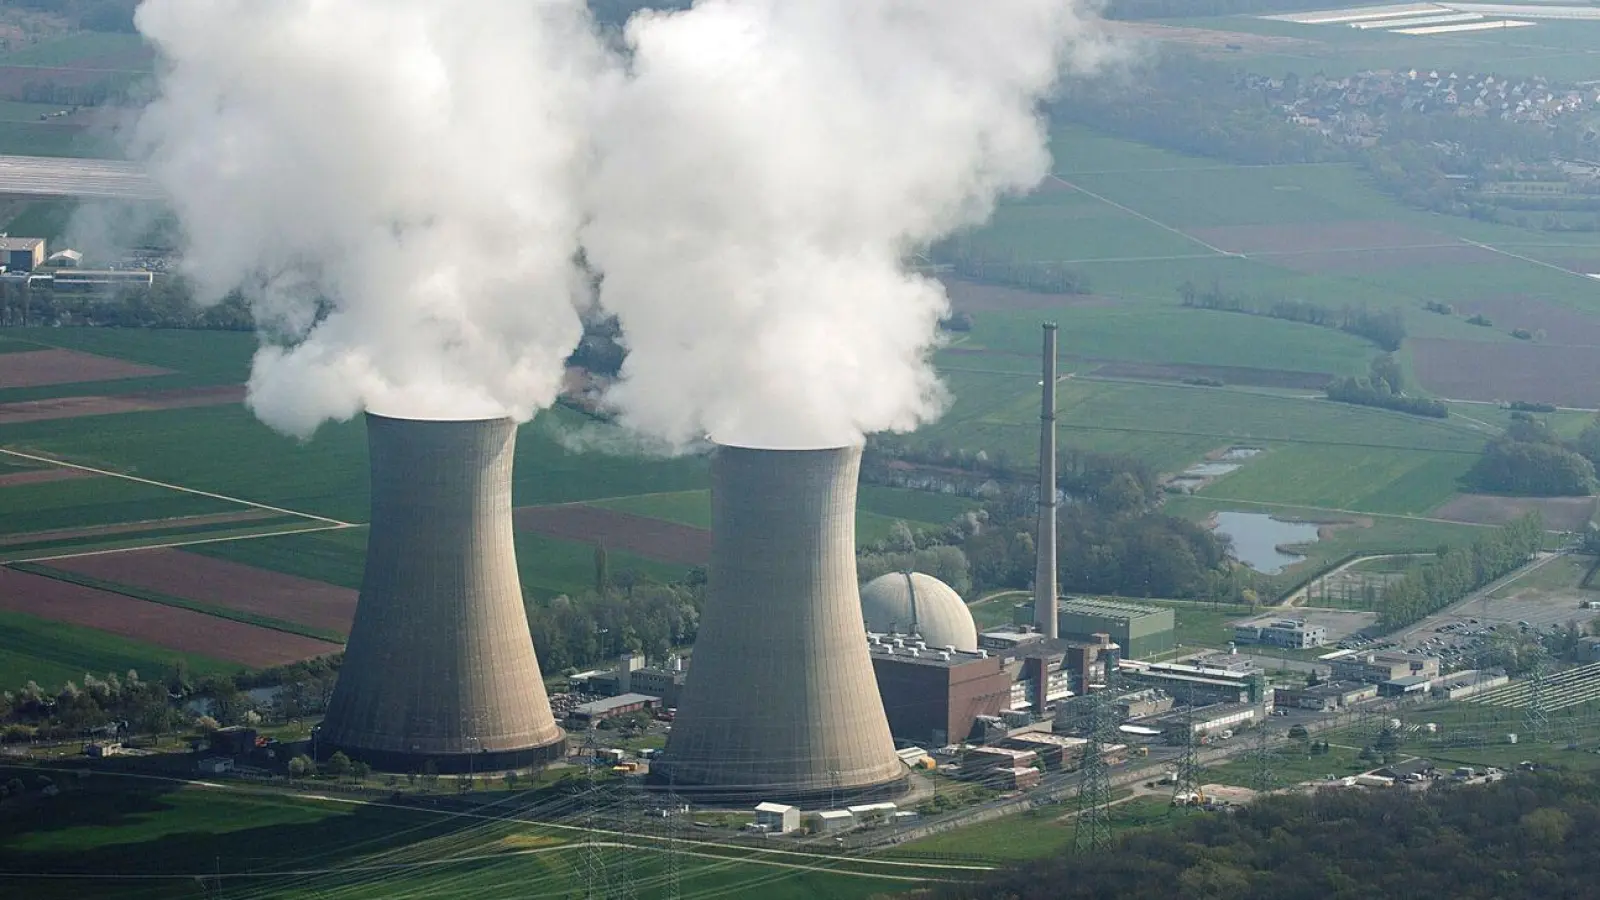 Das Atomkraftwerk Grafenrheinfeld. Das Atomkraftwerk wurde am 27.06.2015 stillgelegt und befindet sich derzeit im Rückbau. (Foto: Rene Ruprecht/dpa)